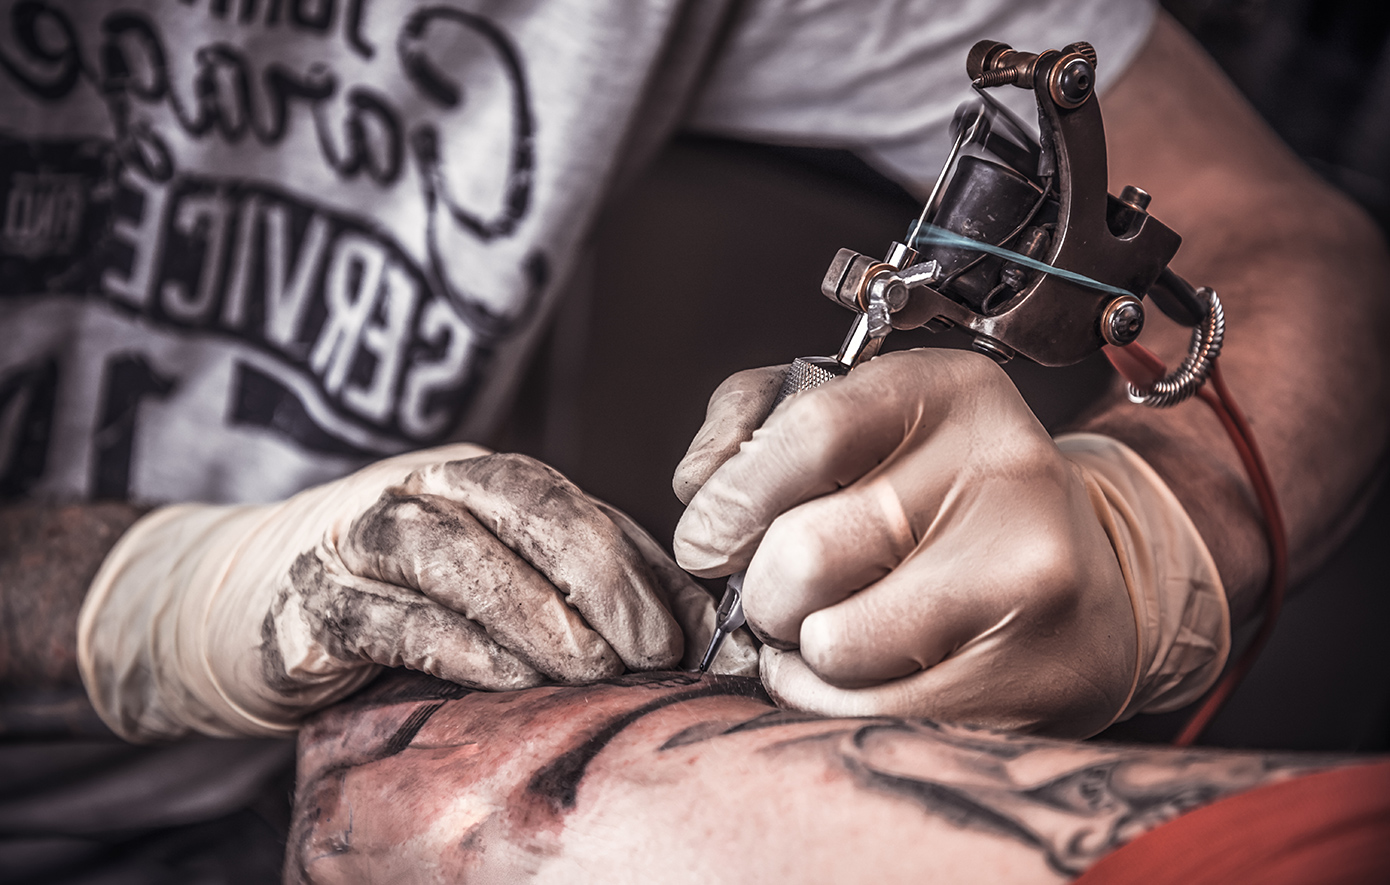 Ανησυχητική έρευνα για τους λάτρεις των τατουάζ &#8211; Το 83% των μελανιών περιέχουν συστατικά που συνδέονται με καρκίνο